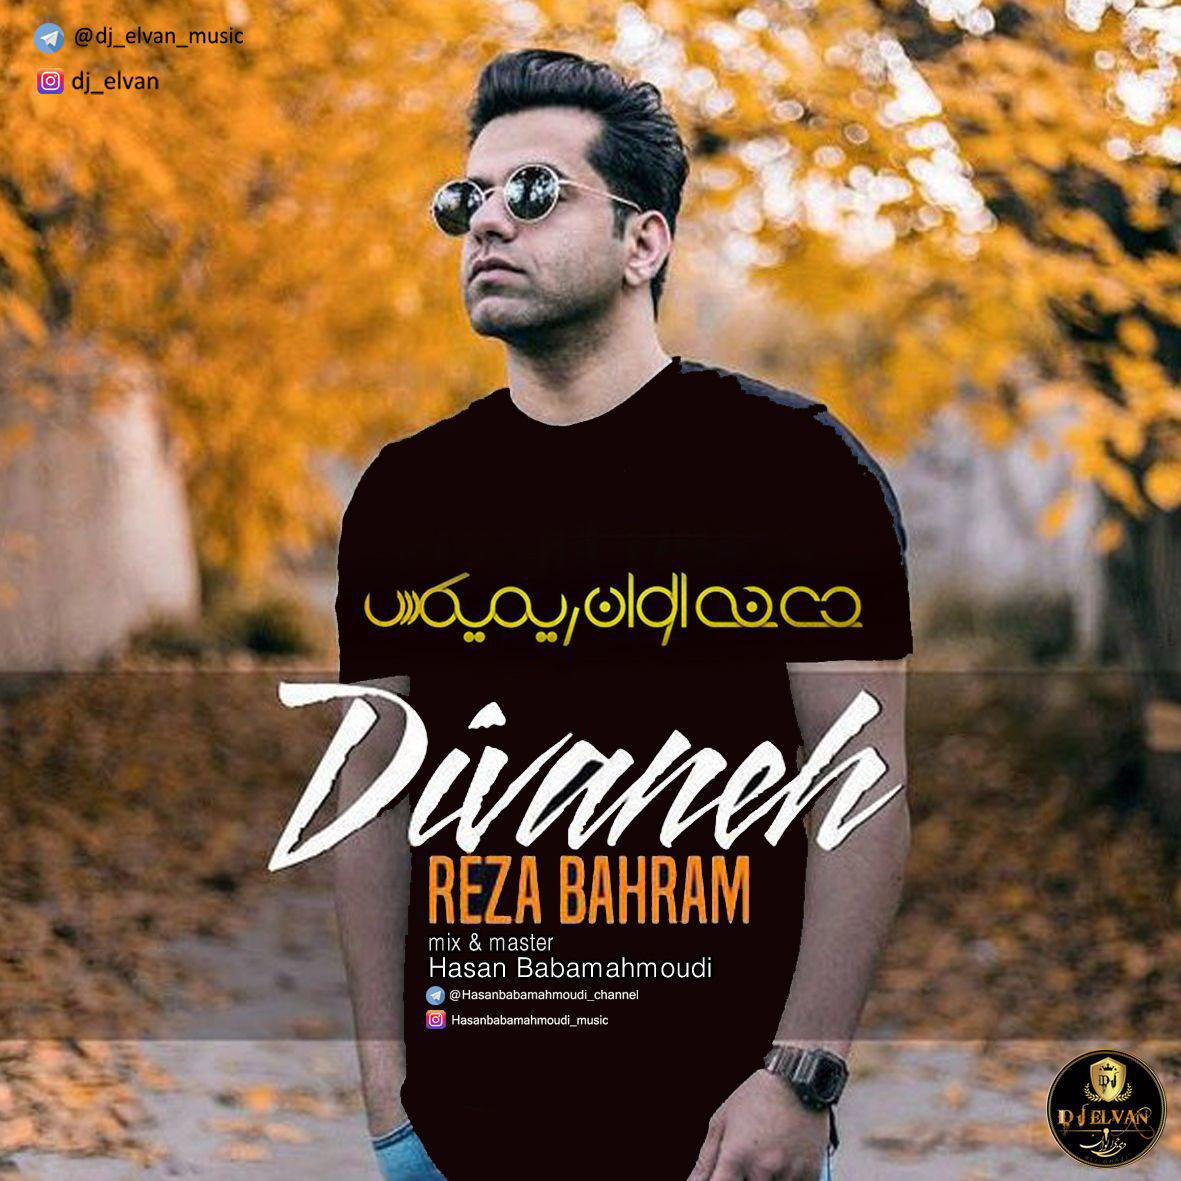  دانلود آهنگ جدید رضا بهرام - دیوانه (دی جی الوان ریمیکس) | Download New Music By Reza Bahram - Divaneh (Dj Elvan Remix)